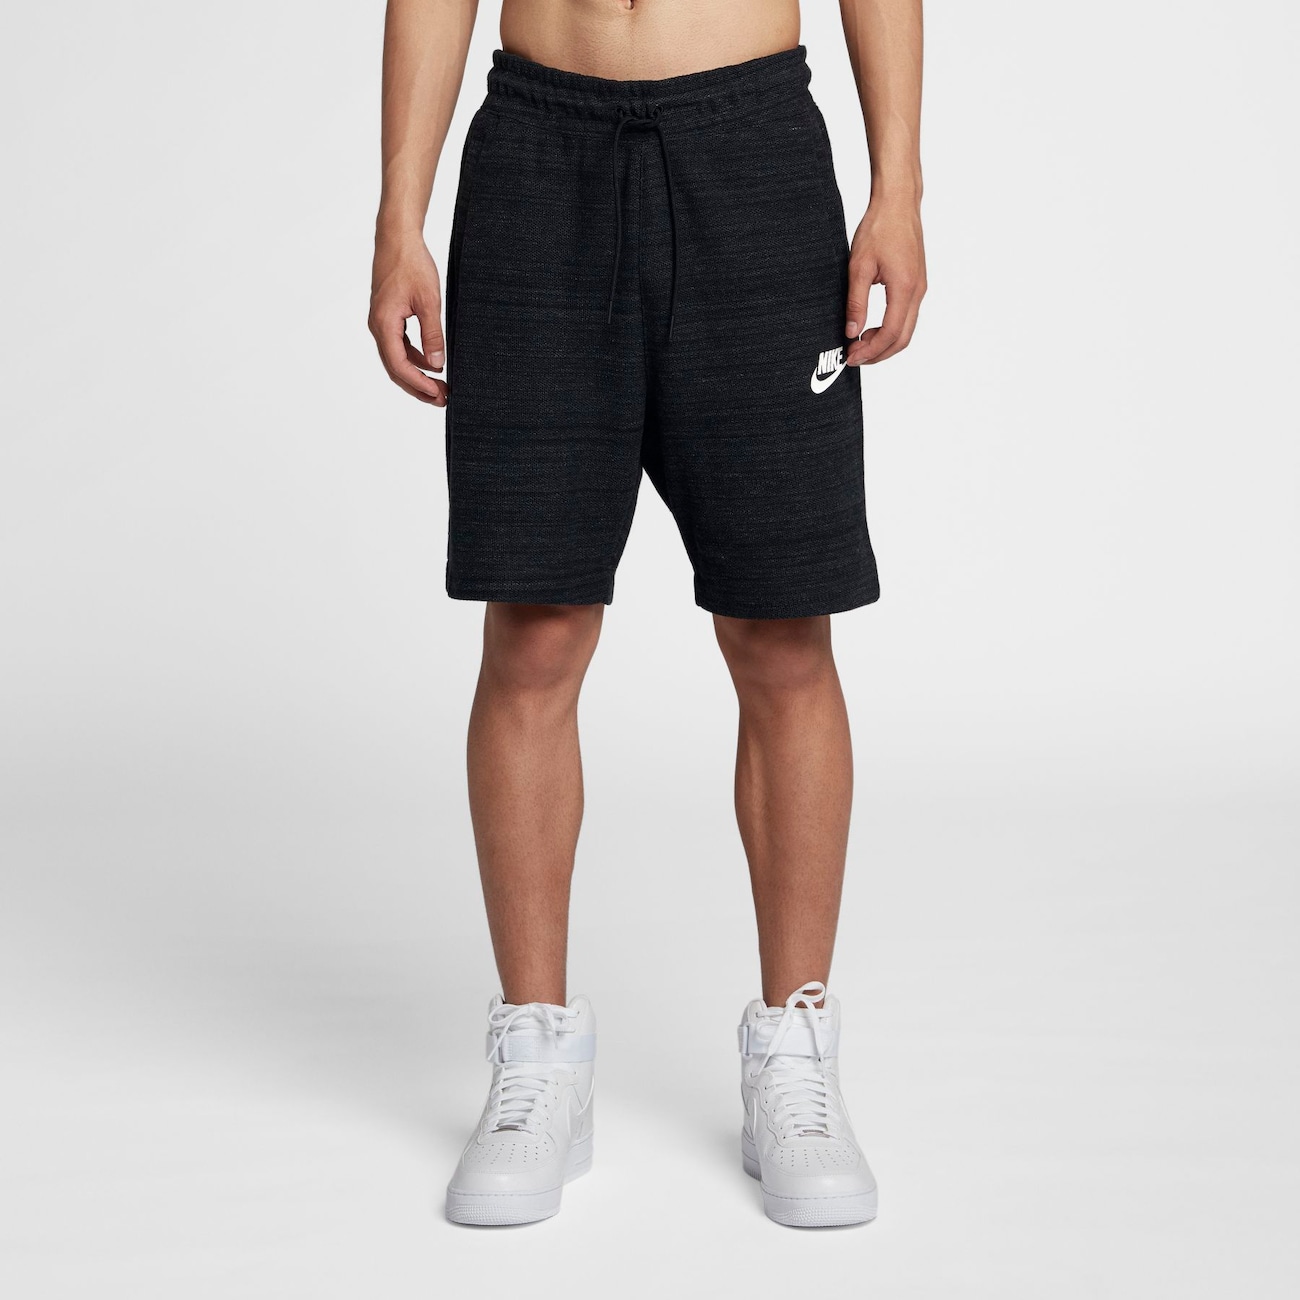 Shorts Nike Sportswear Advance 15 Masculino - Foto 4